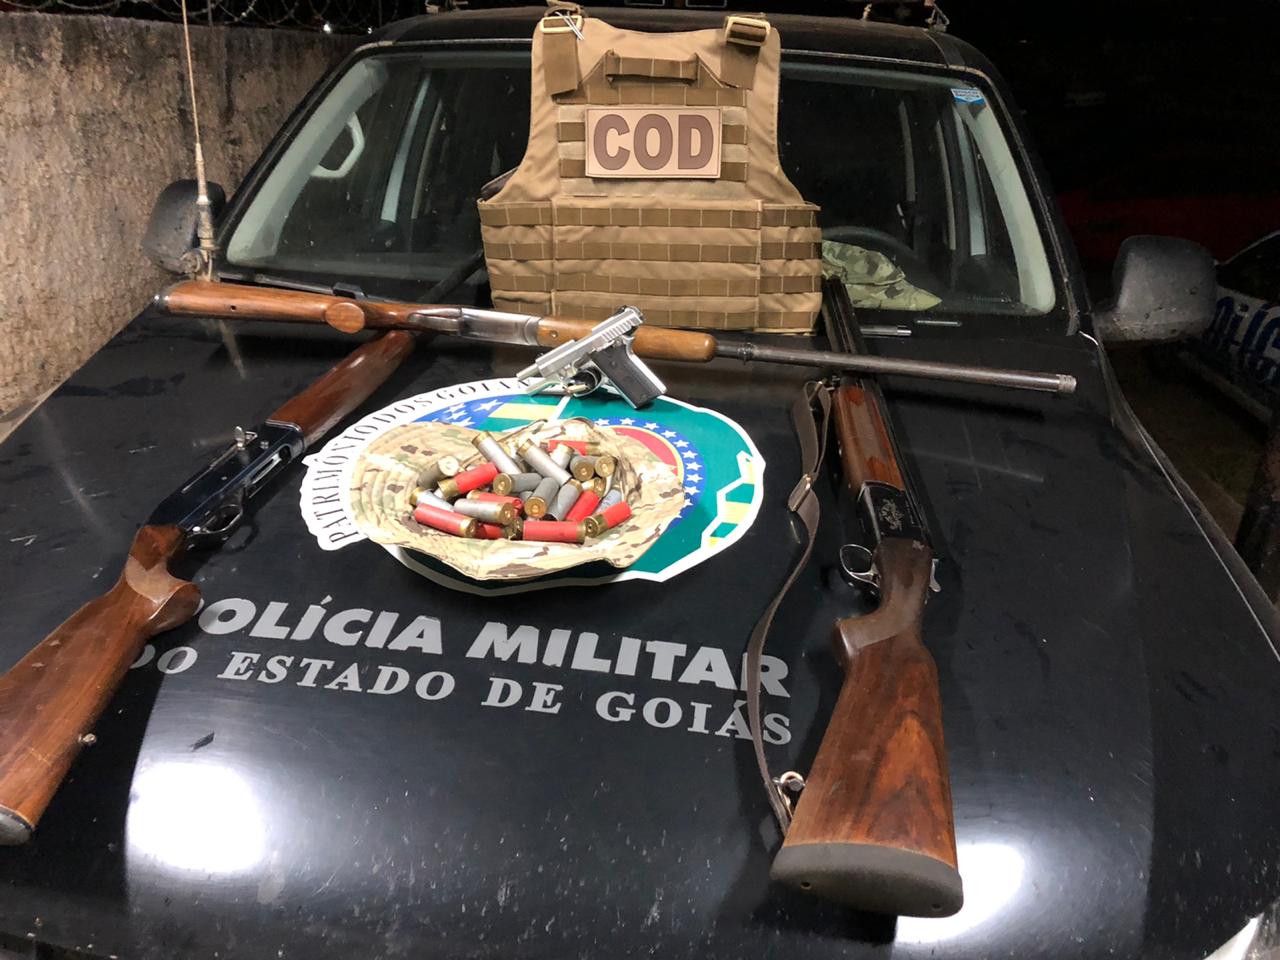 Após mais de 20 km de perseguição, equipes da Polícia Militar apreenderam um carro clonado, quatro armas e munições no Entorno do DF. (Foto: divulgação/PM)